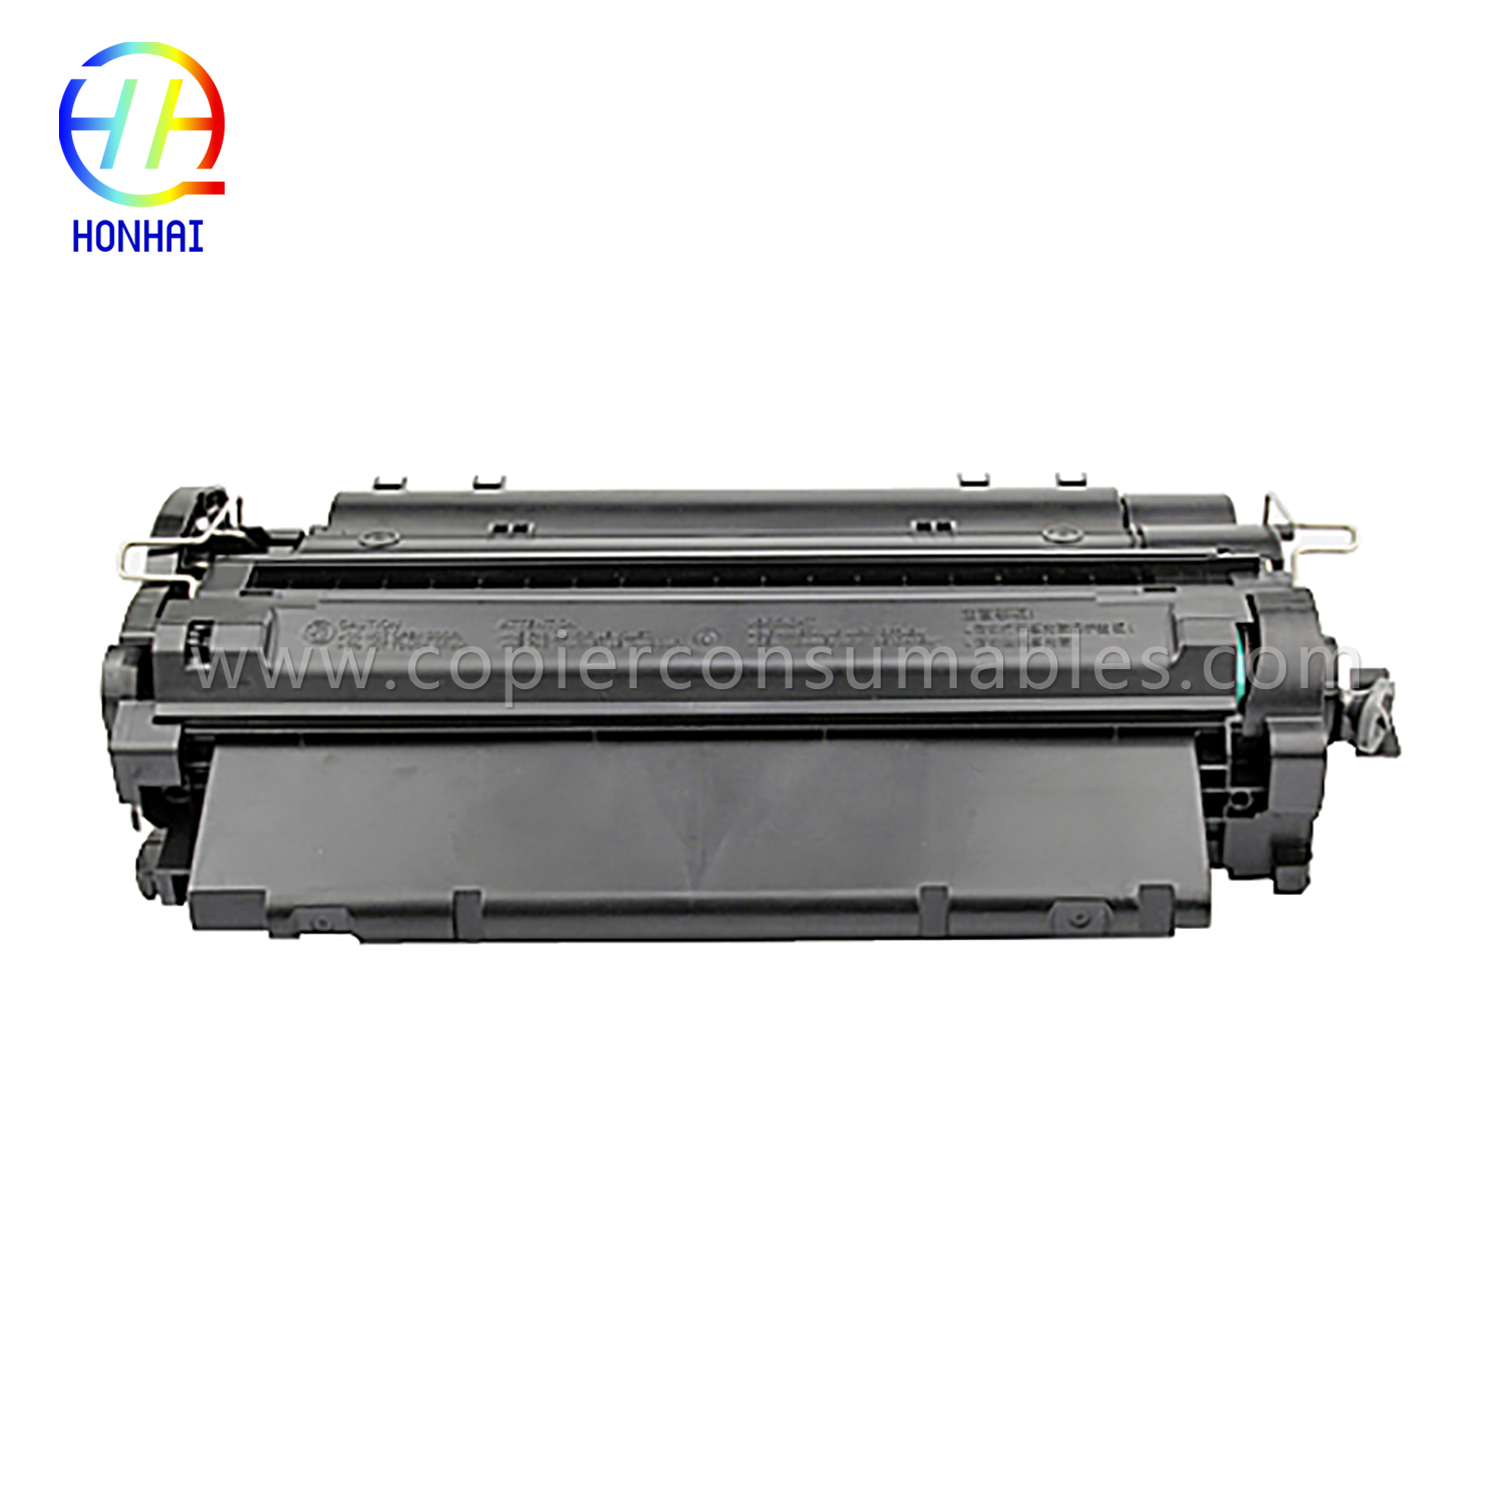 Kartrij Toner Warna HP LaserJet LaserJet Pro MFP M521dn Enterprise P3015 (CE255X) -1 (2) 拷贝